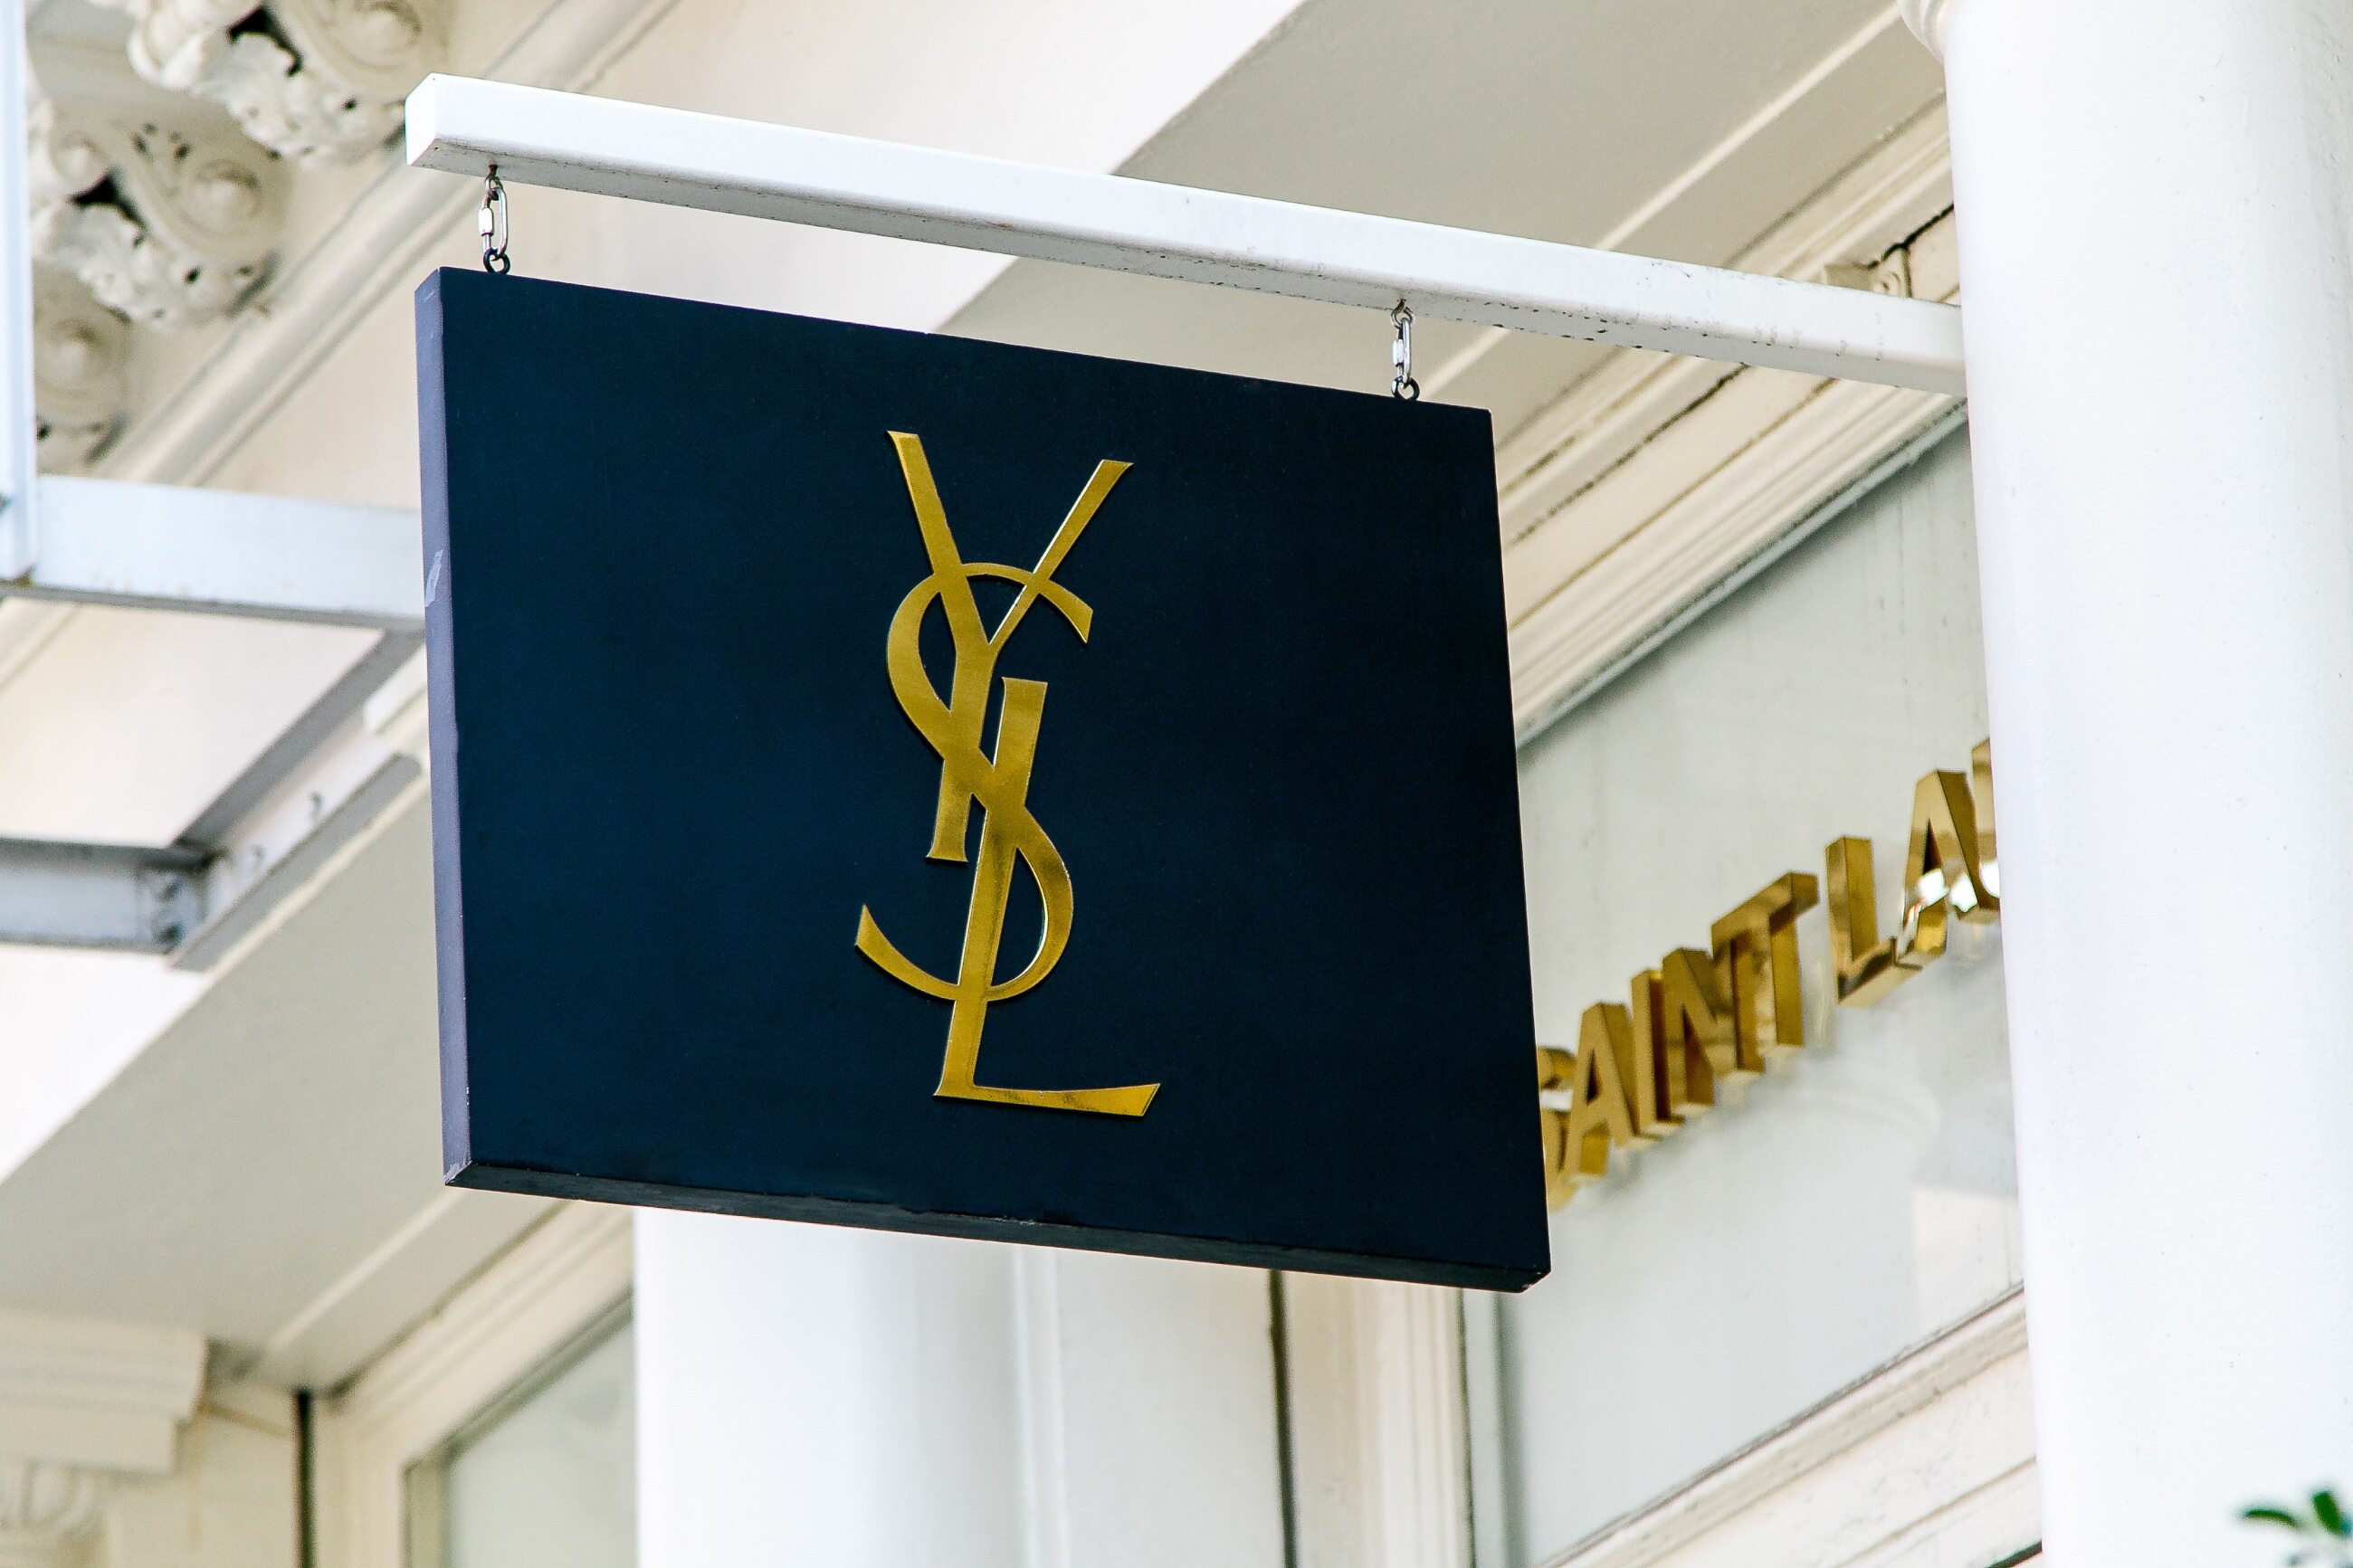 Logo tego francuskiego projektanta mody znajdziemy m.in. na torebkach i perfumach.  A jak poprawnie wymówić Yves Saint Laurent?